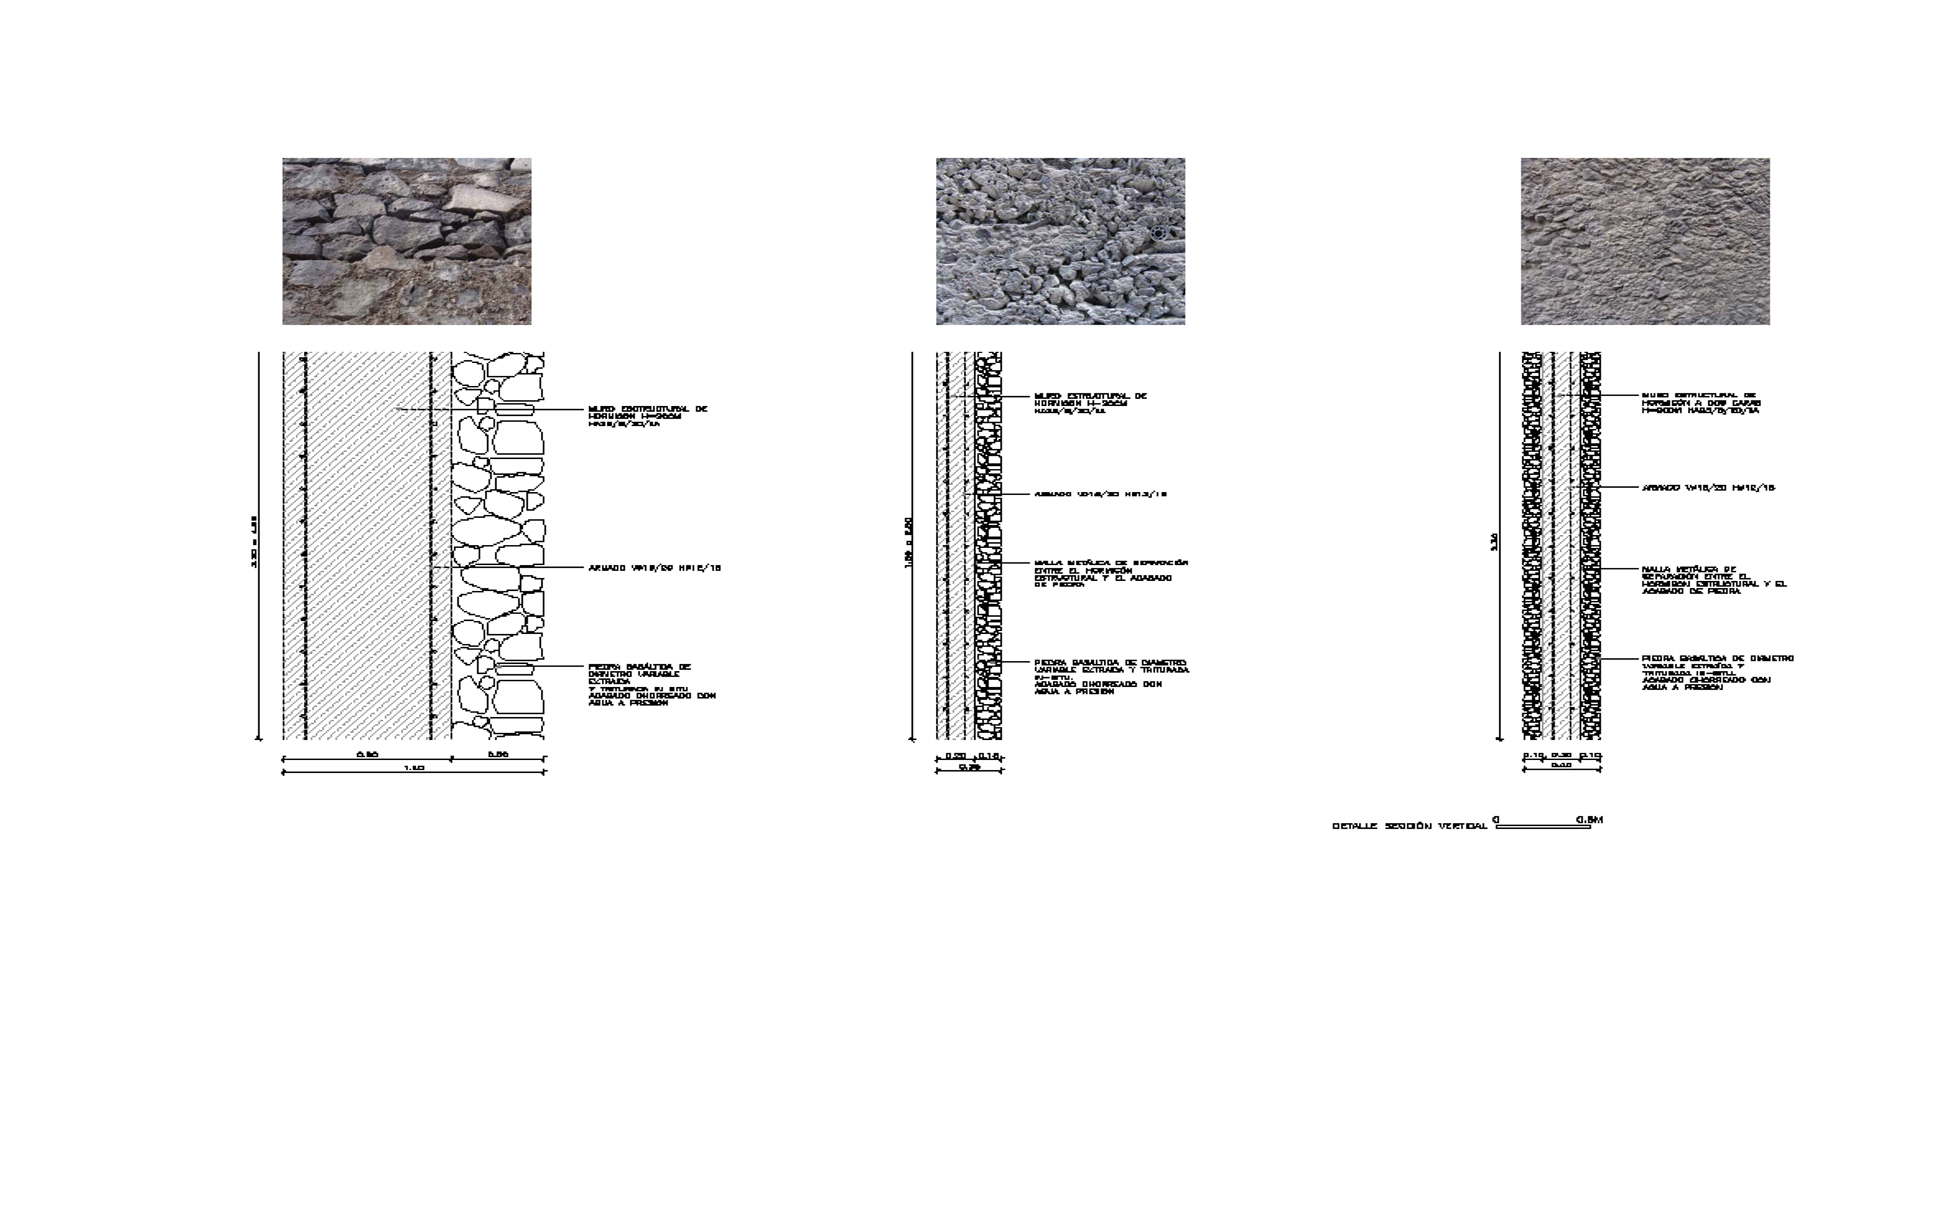 Muro estructural de piedra y hormigon